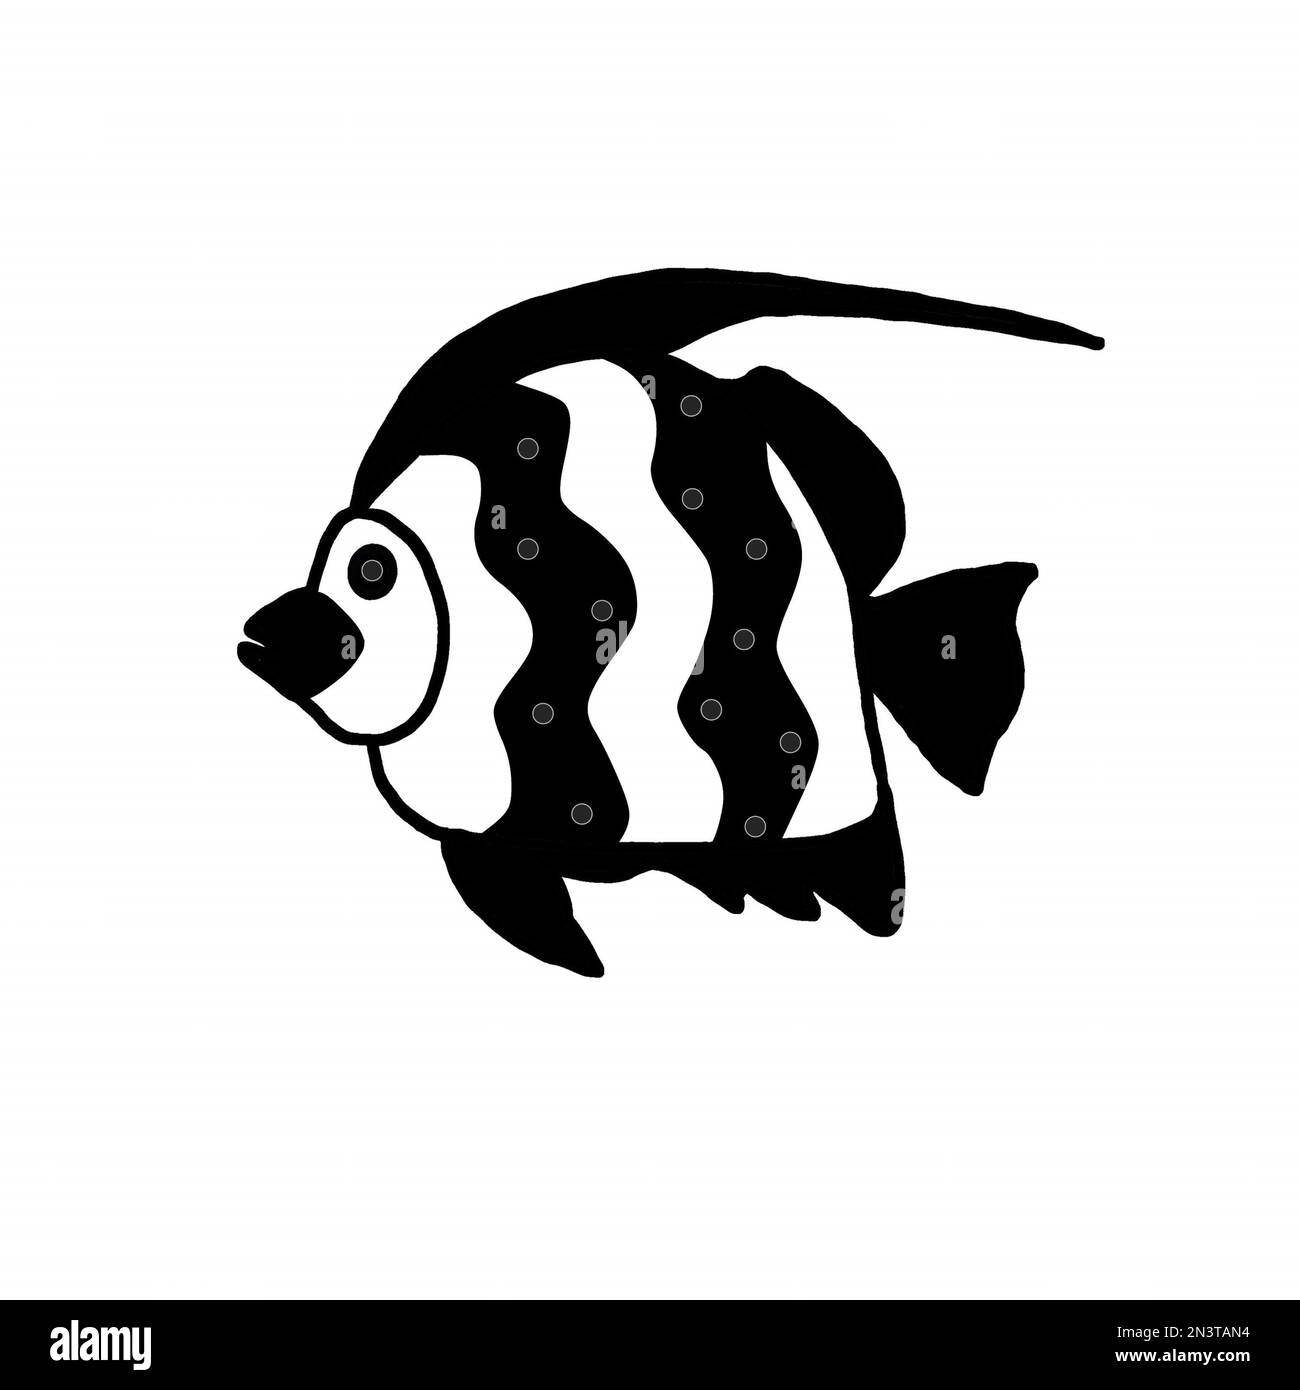 Weiße Seefische mit schwarzen, gesprenkelten Flossen. JPEG-Darstellung der Unterwasserwelt für Stoffe, Textilien, Verpackungen, Geschenke, Karten, Bettwäsche, Drucke. Stockfoto